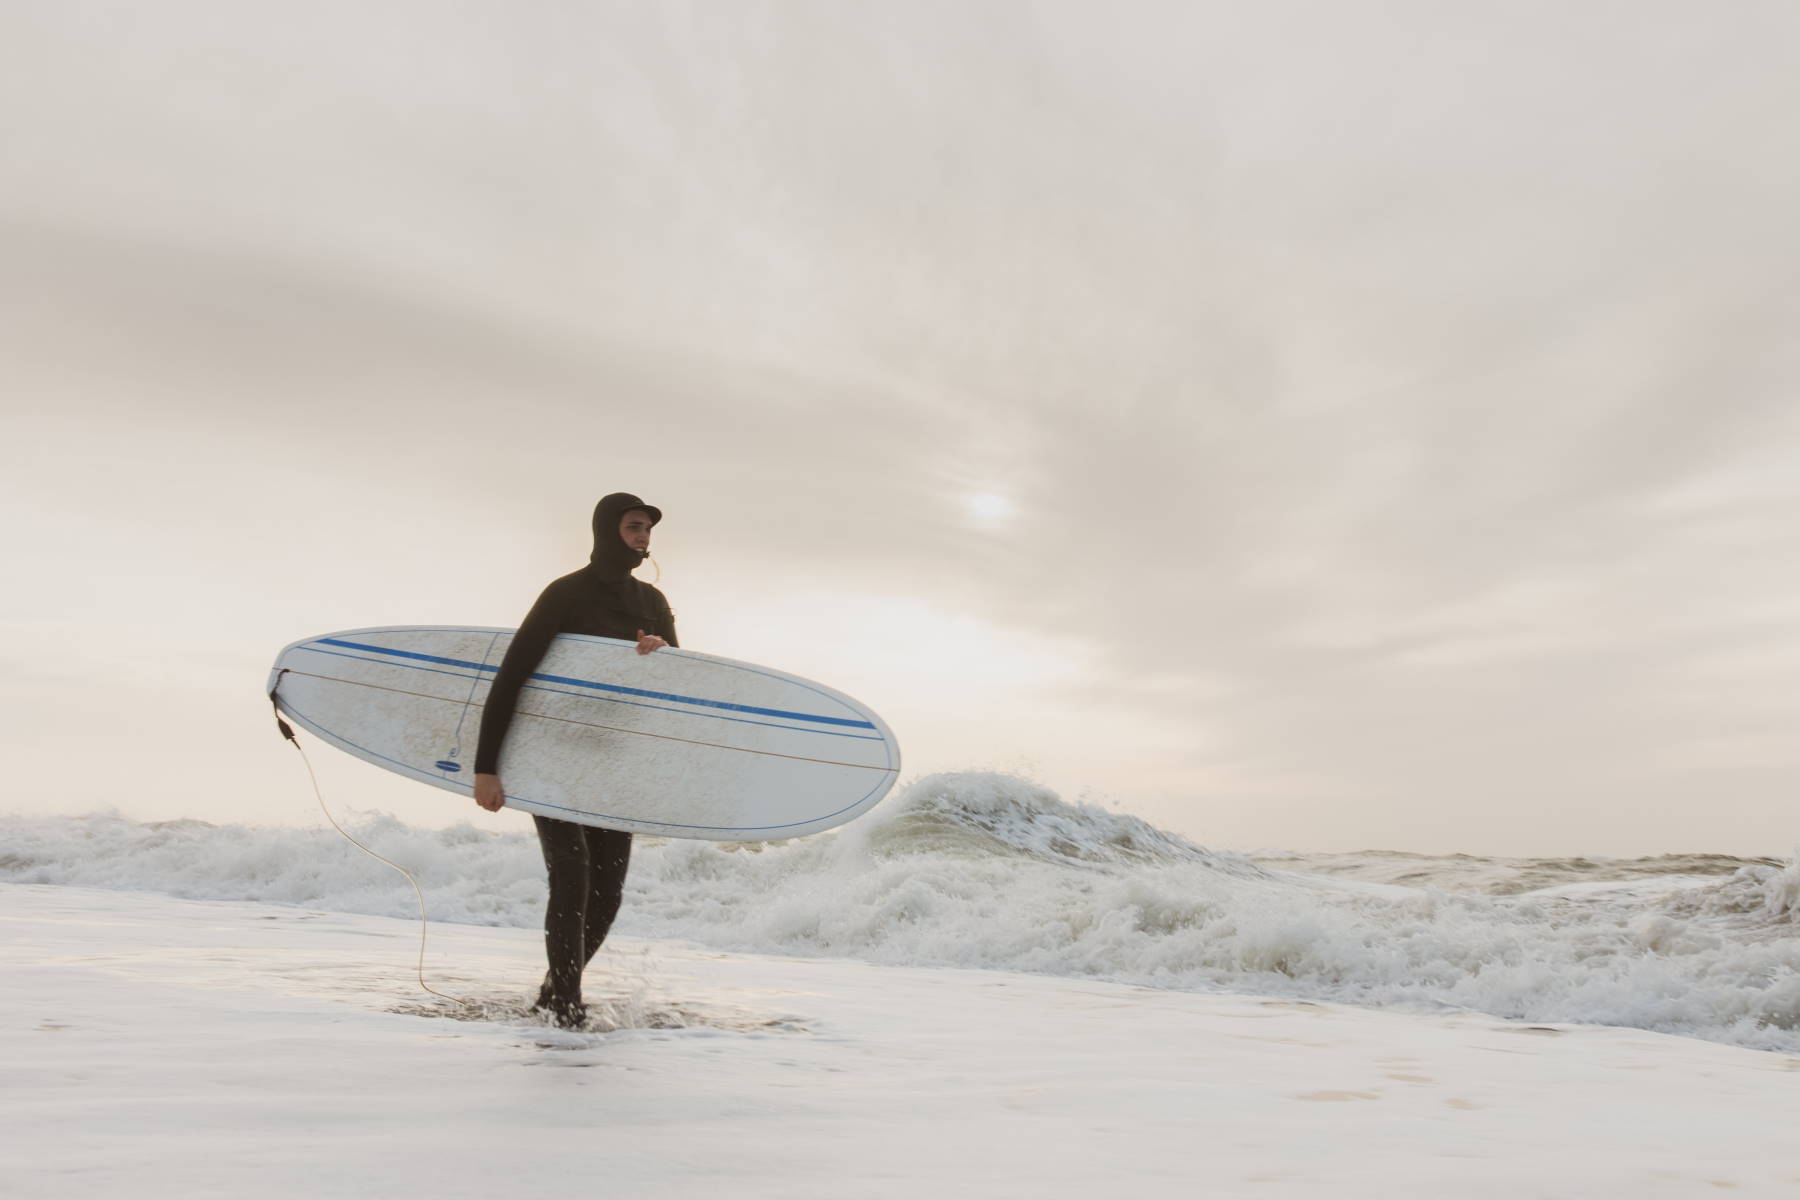 Seværdigheder og Oplevelser i Hvide Sande - Surfing - Rejs Dig Lykkelig